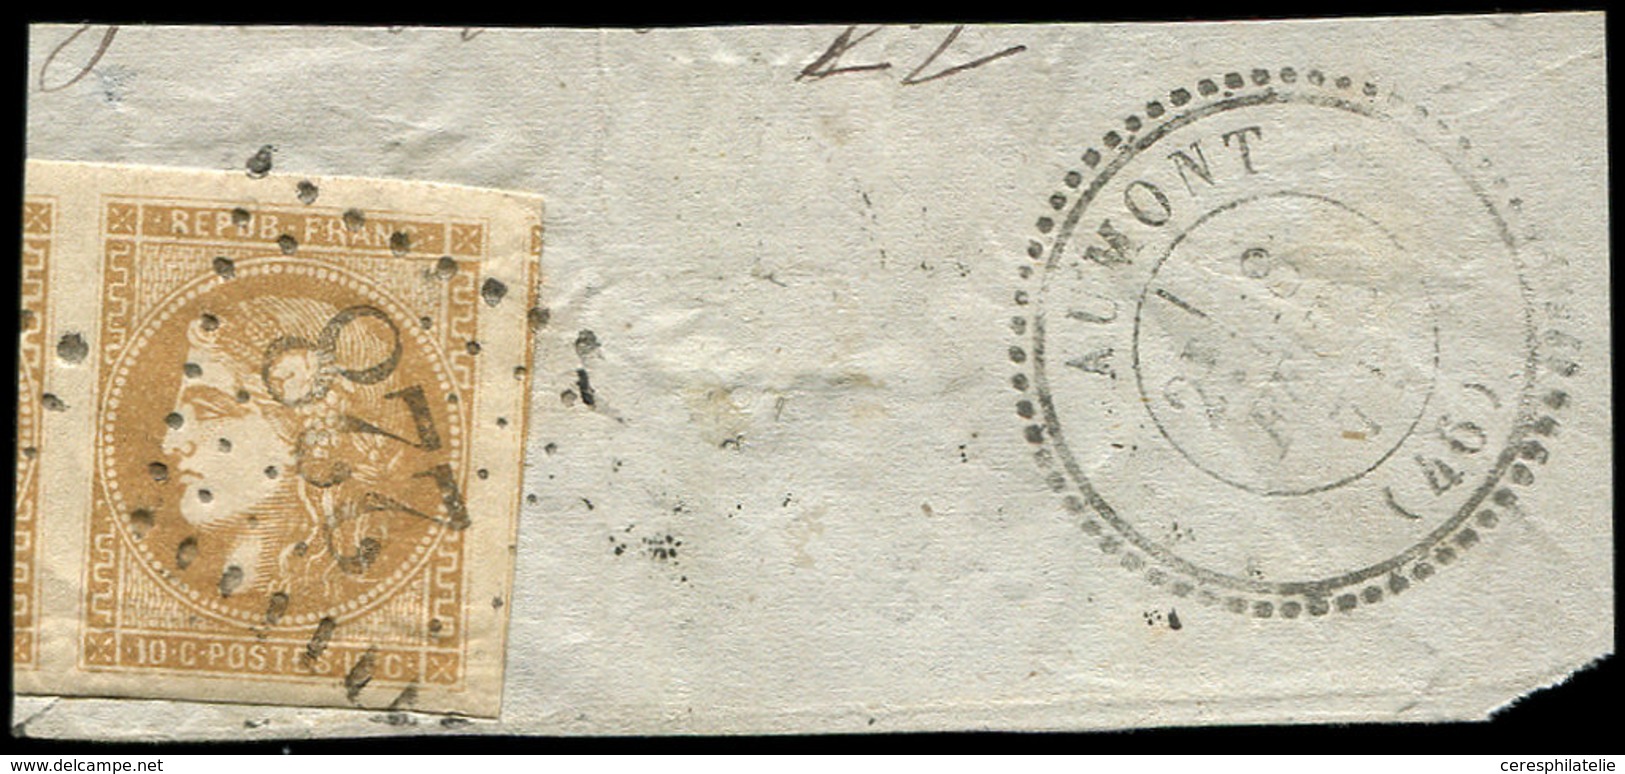 EMISSION DE BORDEAUX - 43B  10c. Bistre-jaune, R II, Grandes Marges, 2 Voisins Obl. GC 228 S. Fragt, Càd T24 AUMONT 8/2/ - 1870 Bordeaux Printing